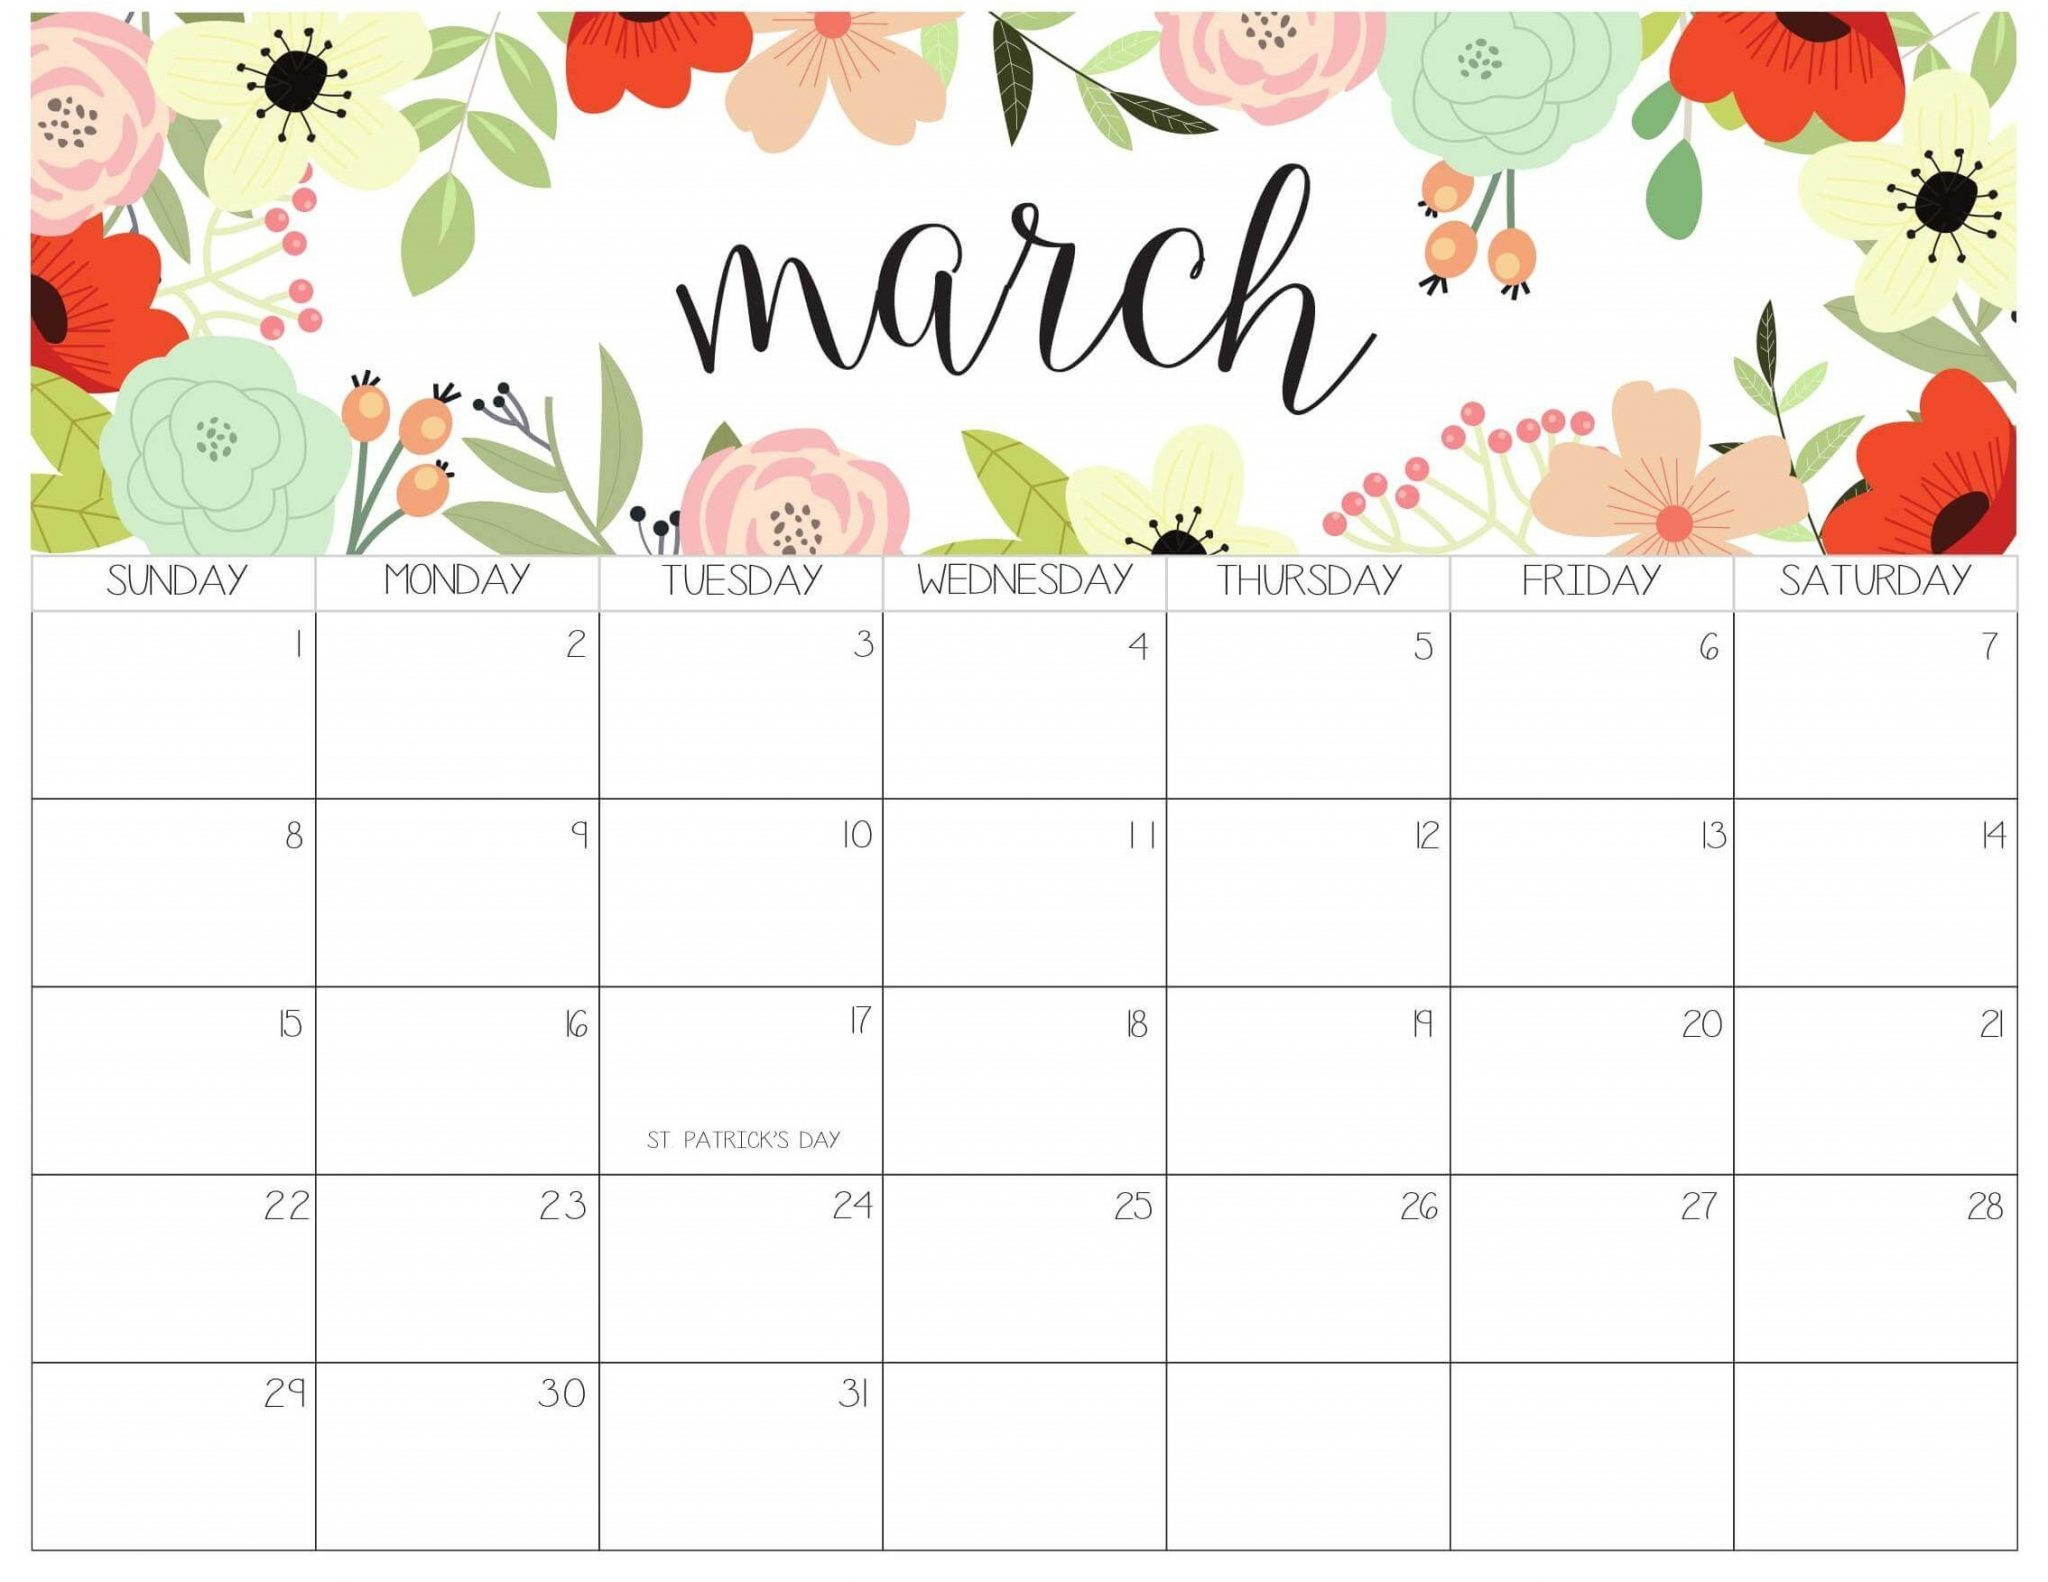 March 2020 Office Desk Calendar | Calendar 2019